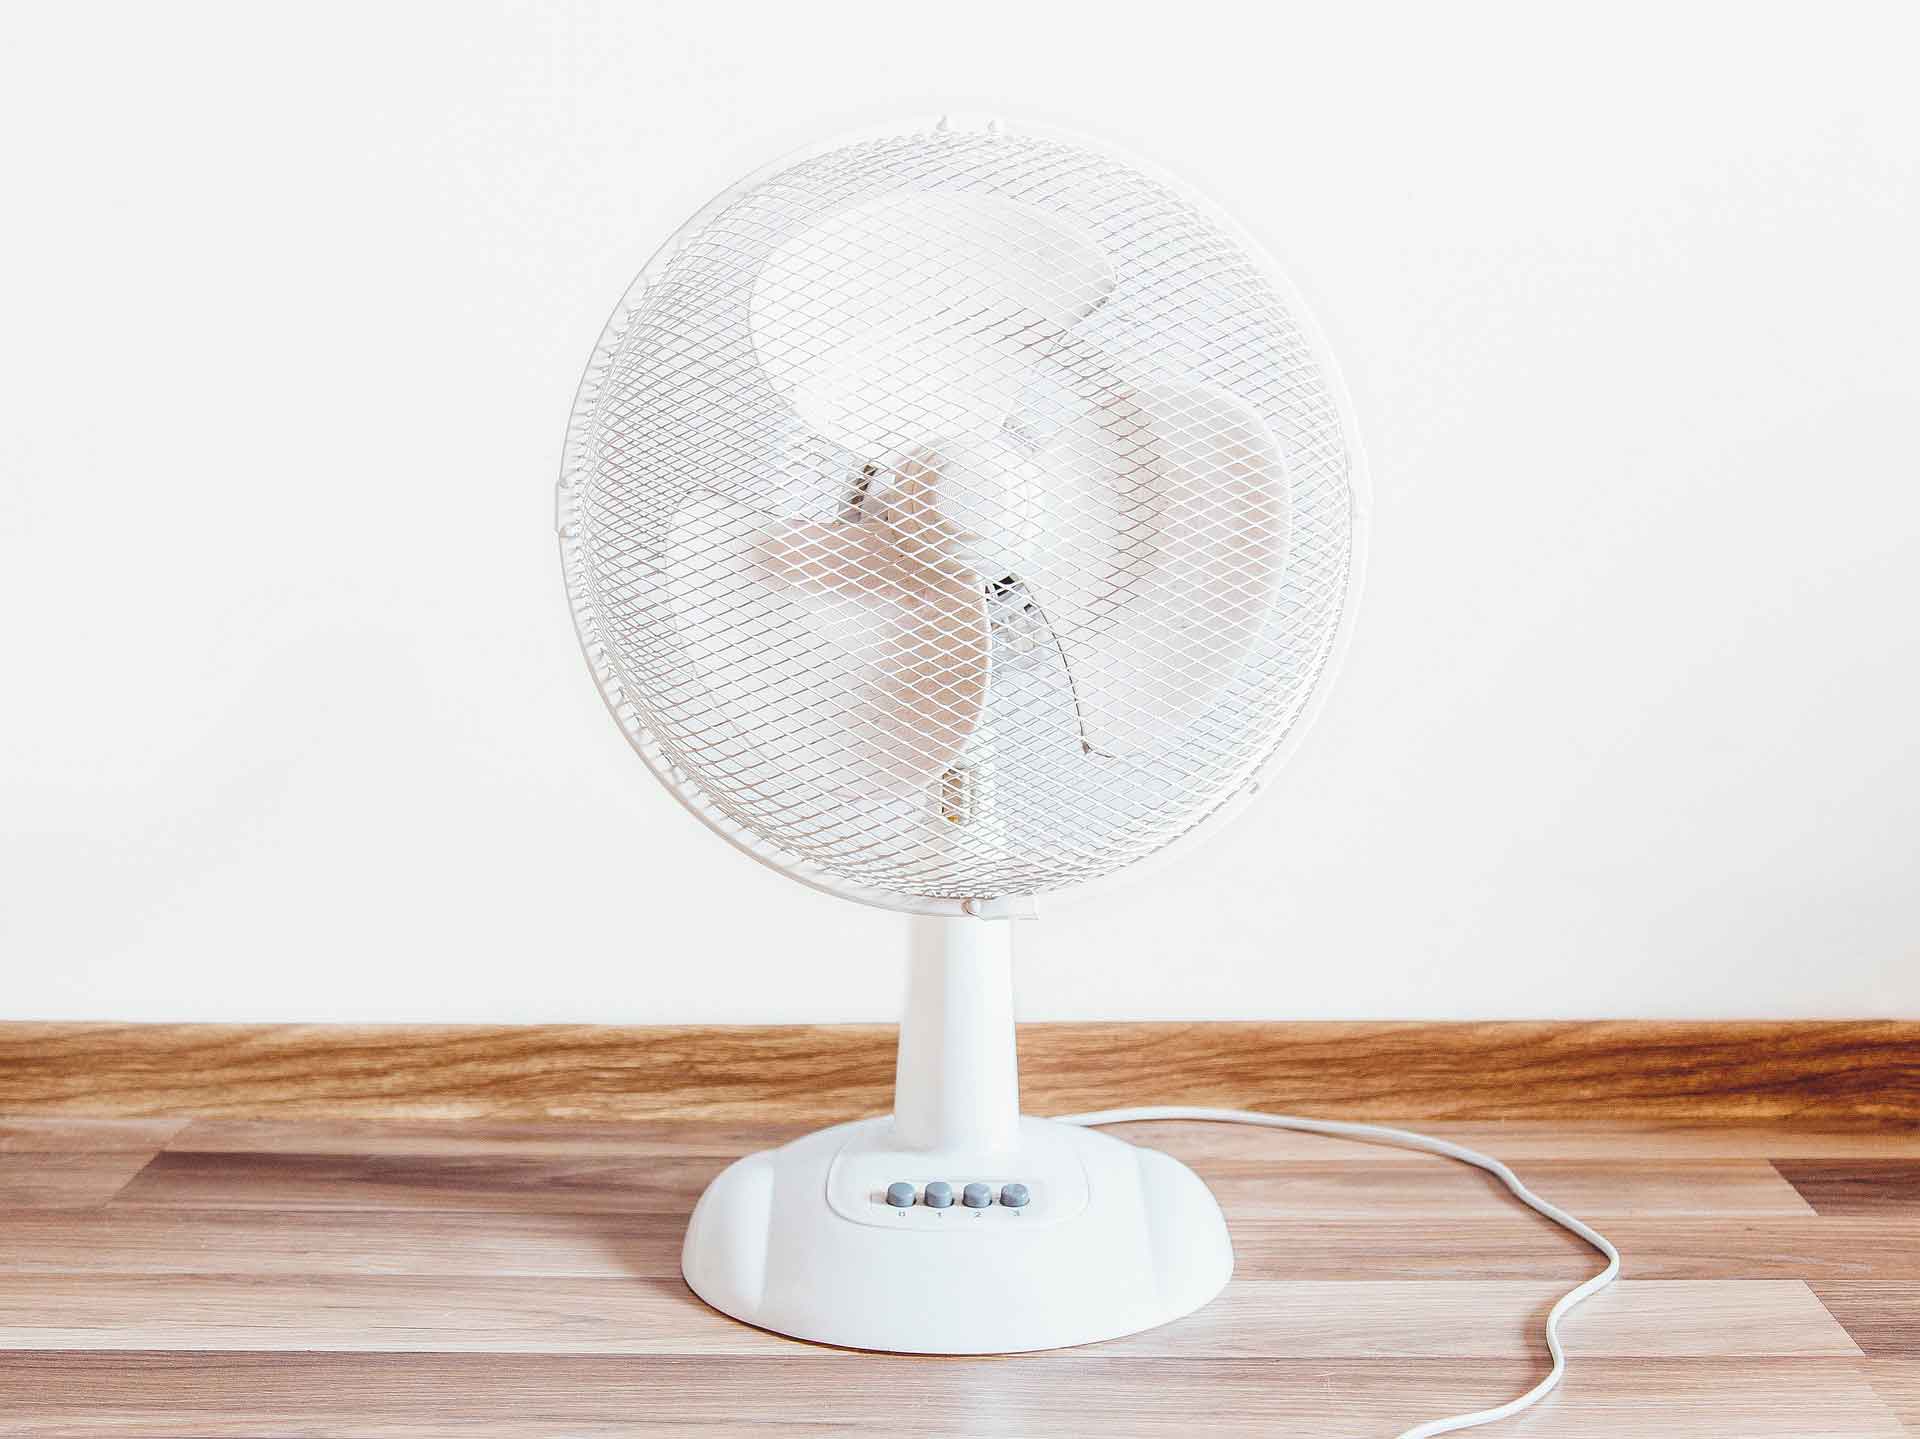 White electric fan